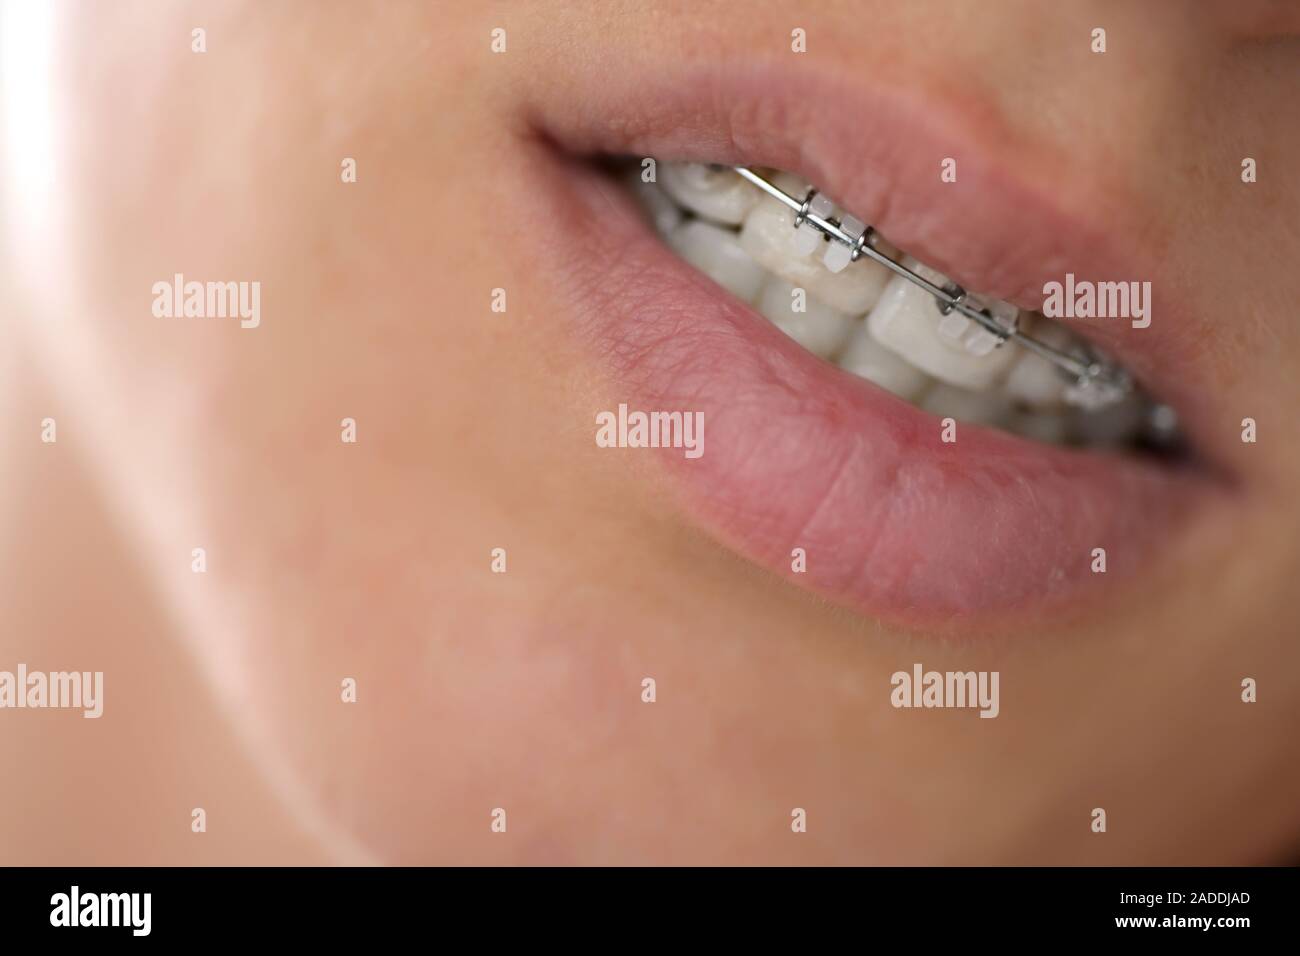 Brasket System in lächelnden Mund, close-up Lippen Stockfoto